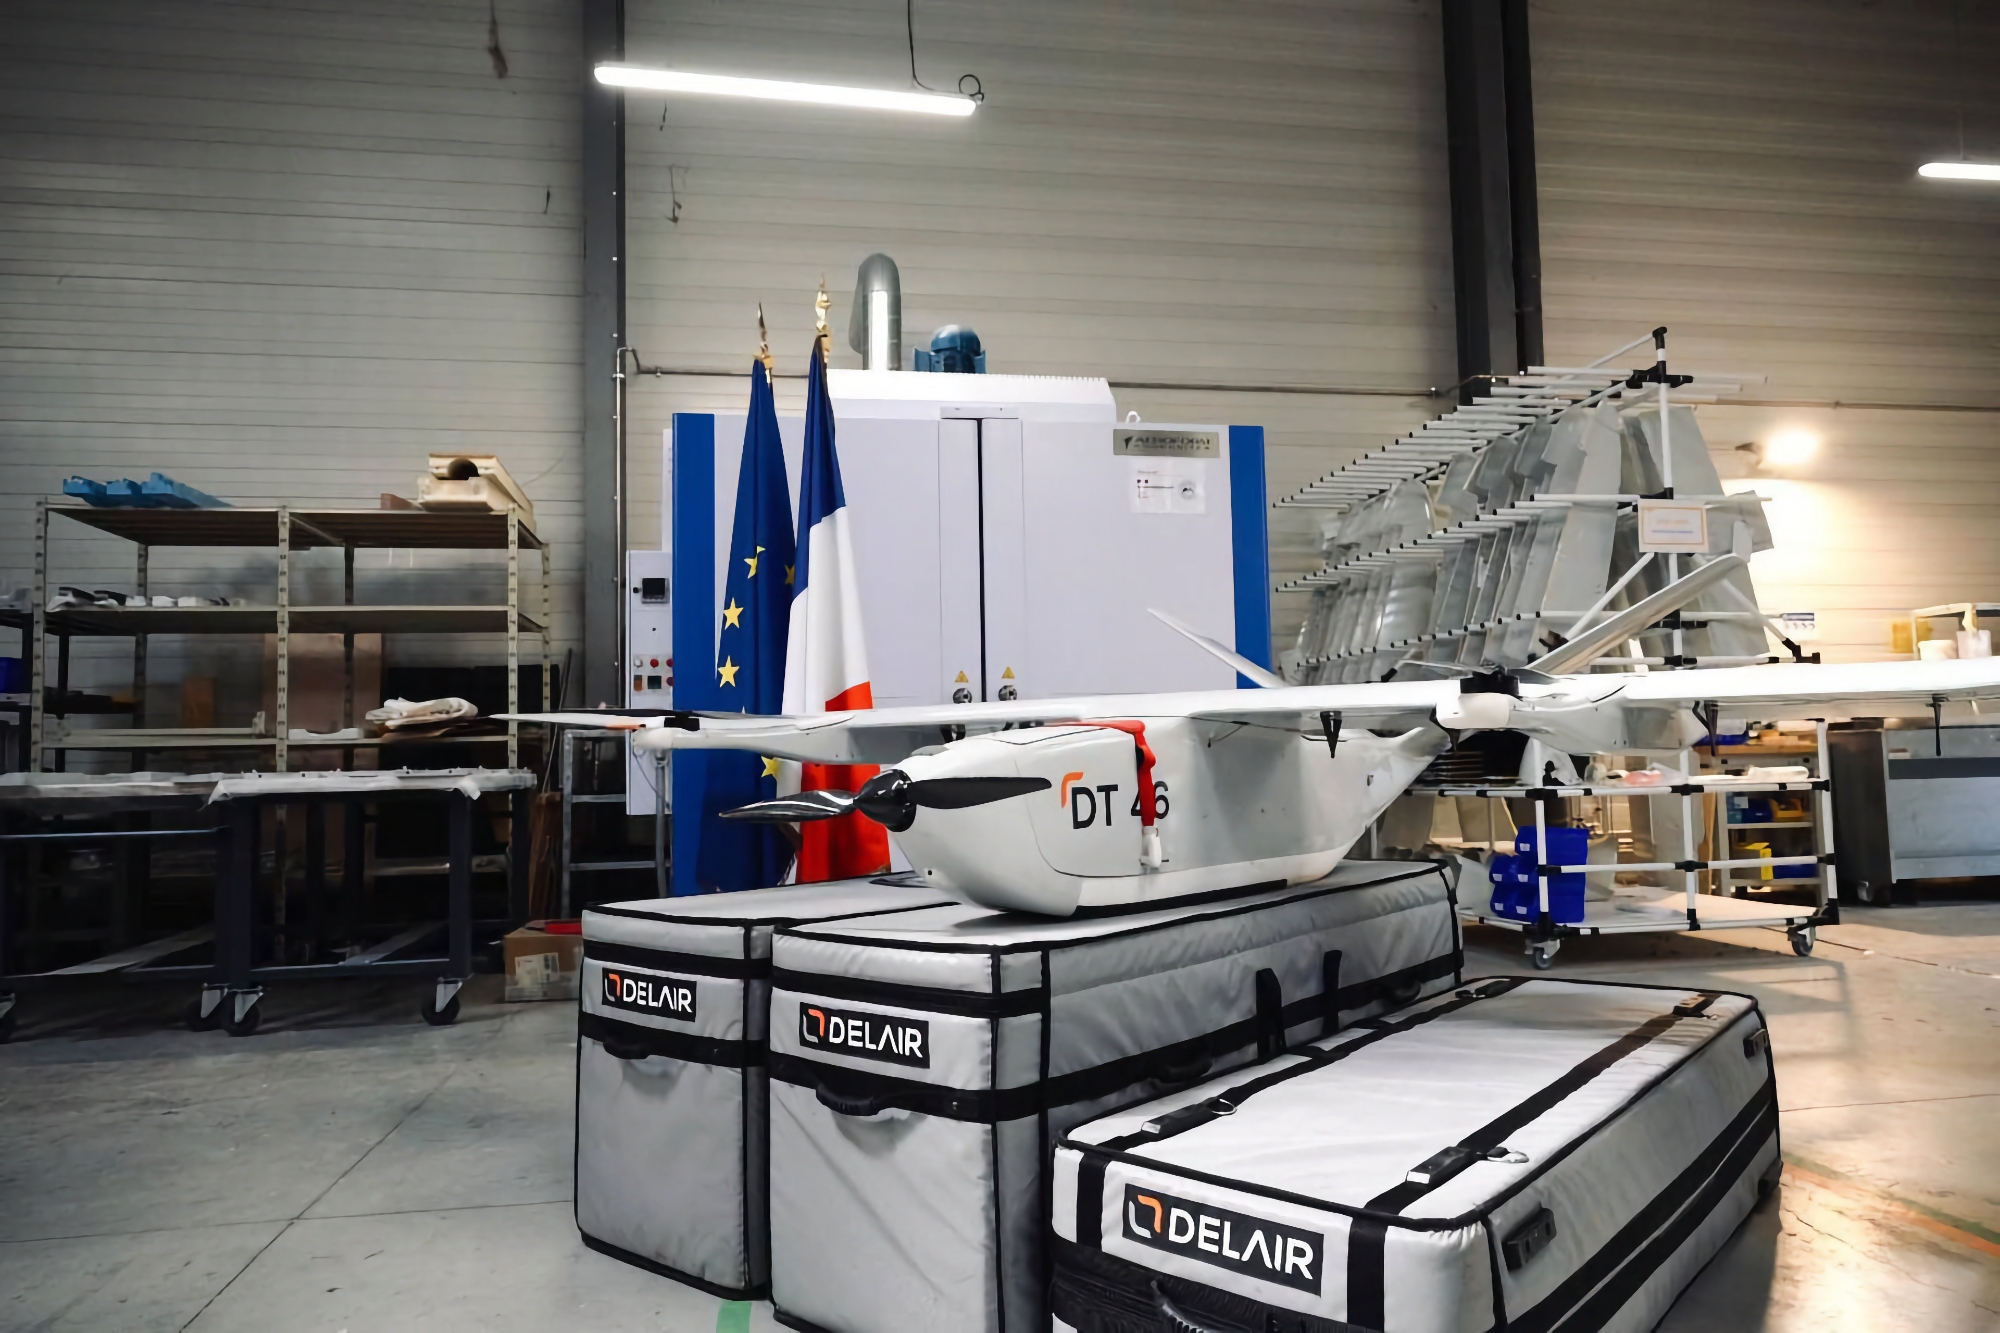 Frankrike beställer 100 nya kamikaze-drönare från Delair till Ukraina